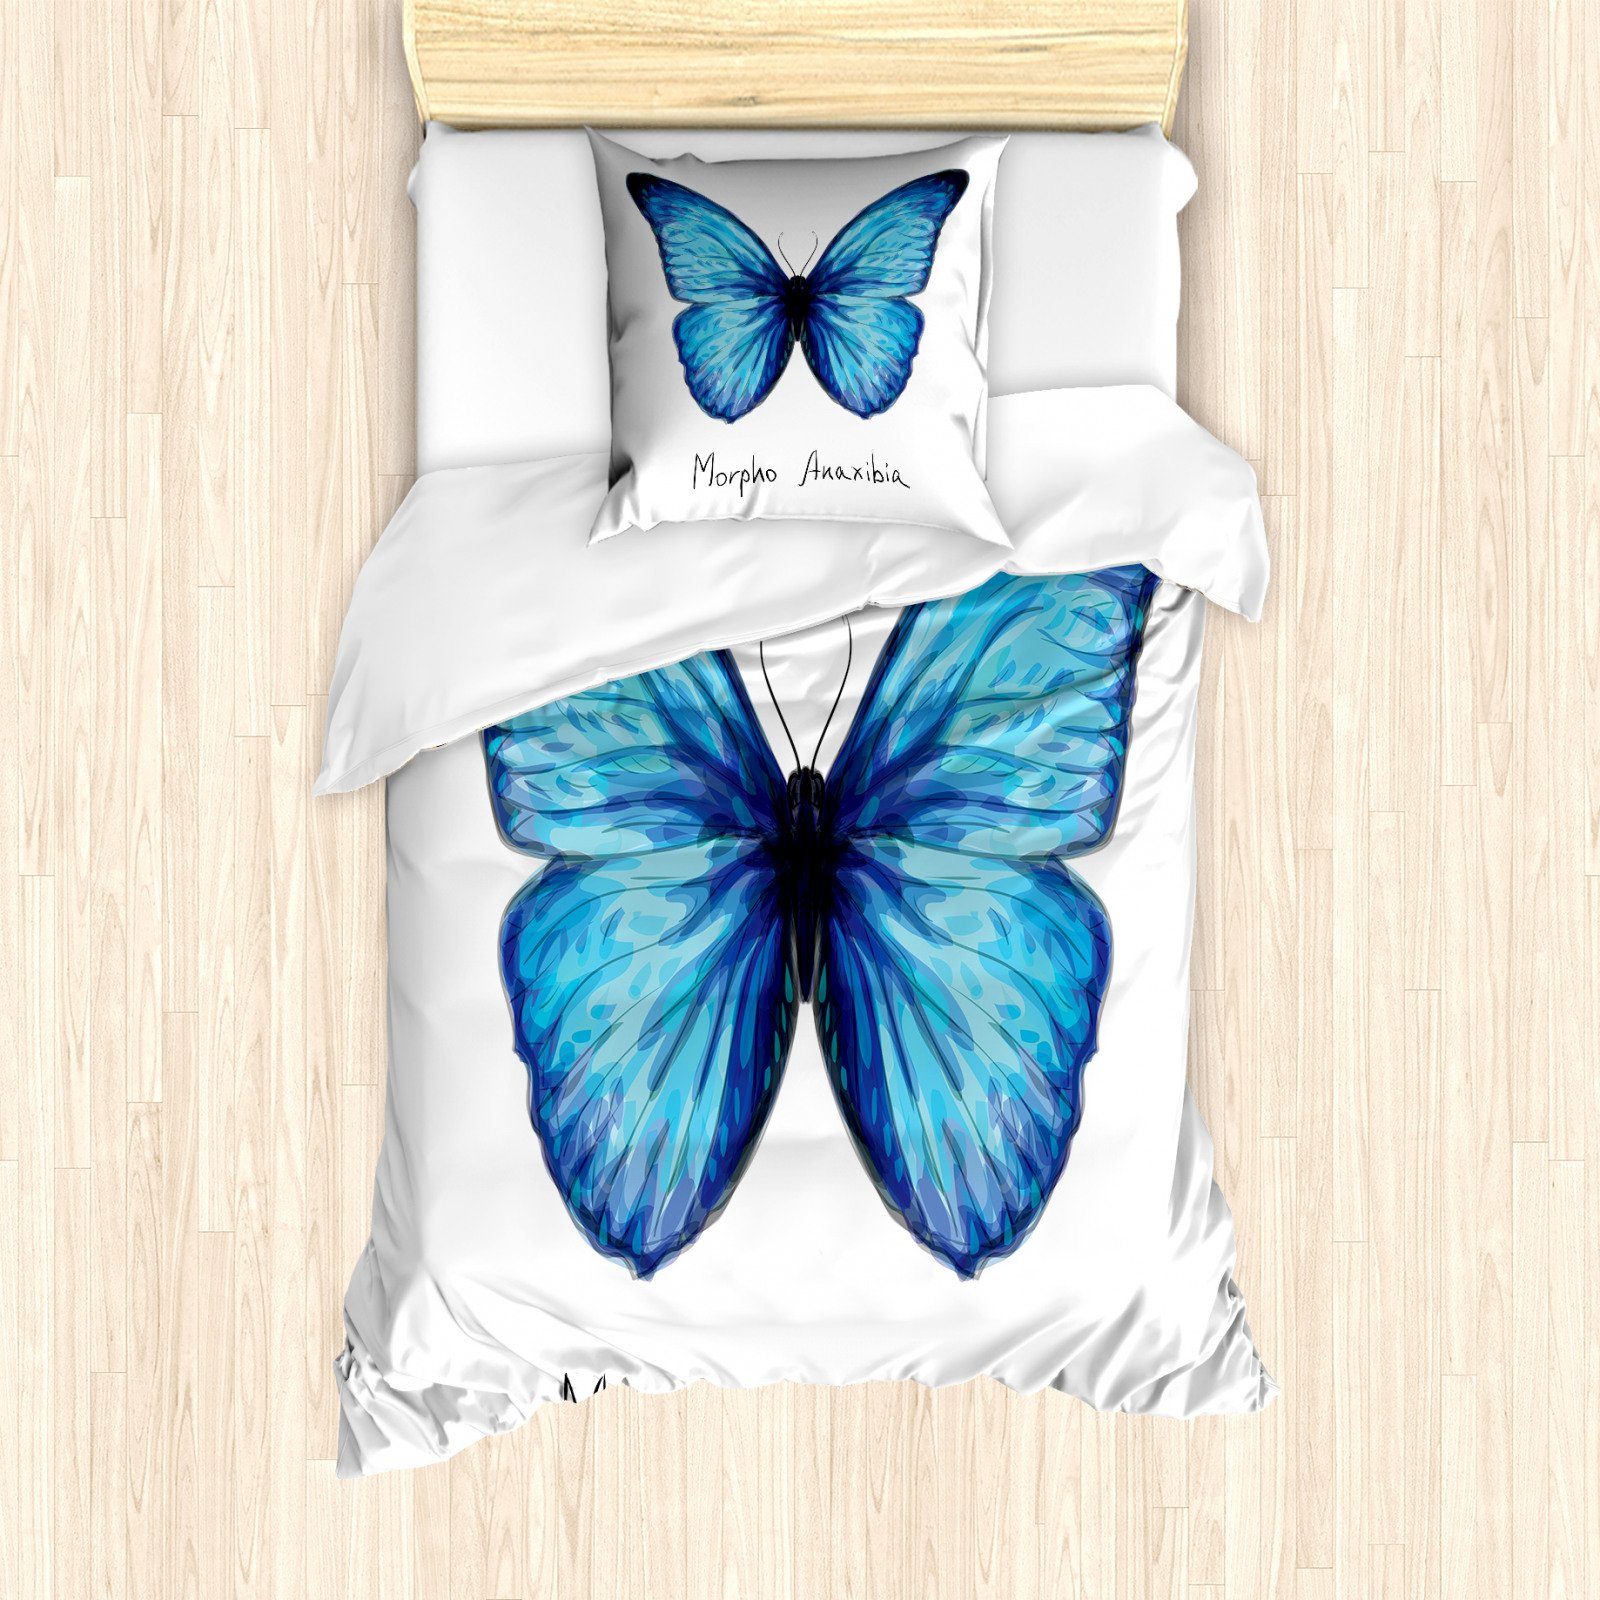 etérea Baumwolle Kissenbezug Kissenhülle Grau weich und pflegeleicht Osaka Schmetterlinge 1 teilig 40x80 cm Kissenbezug